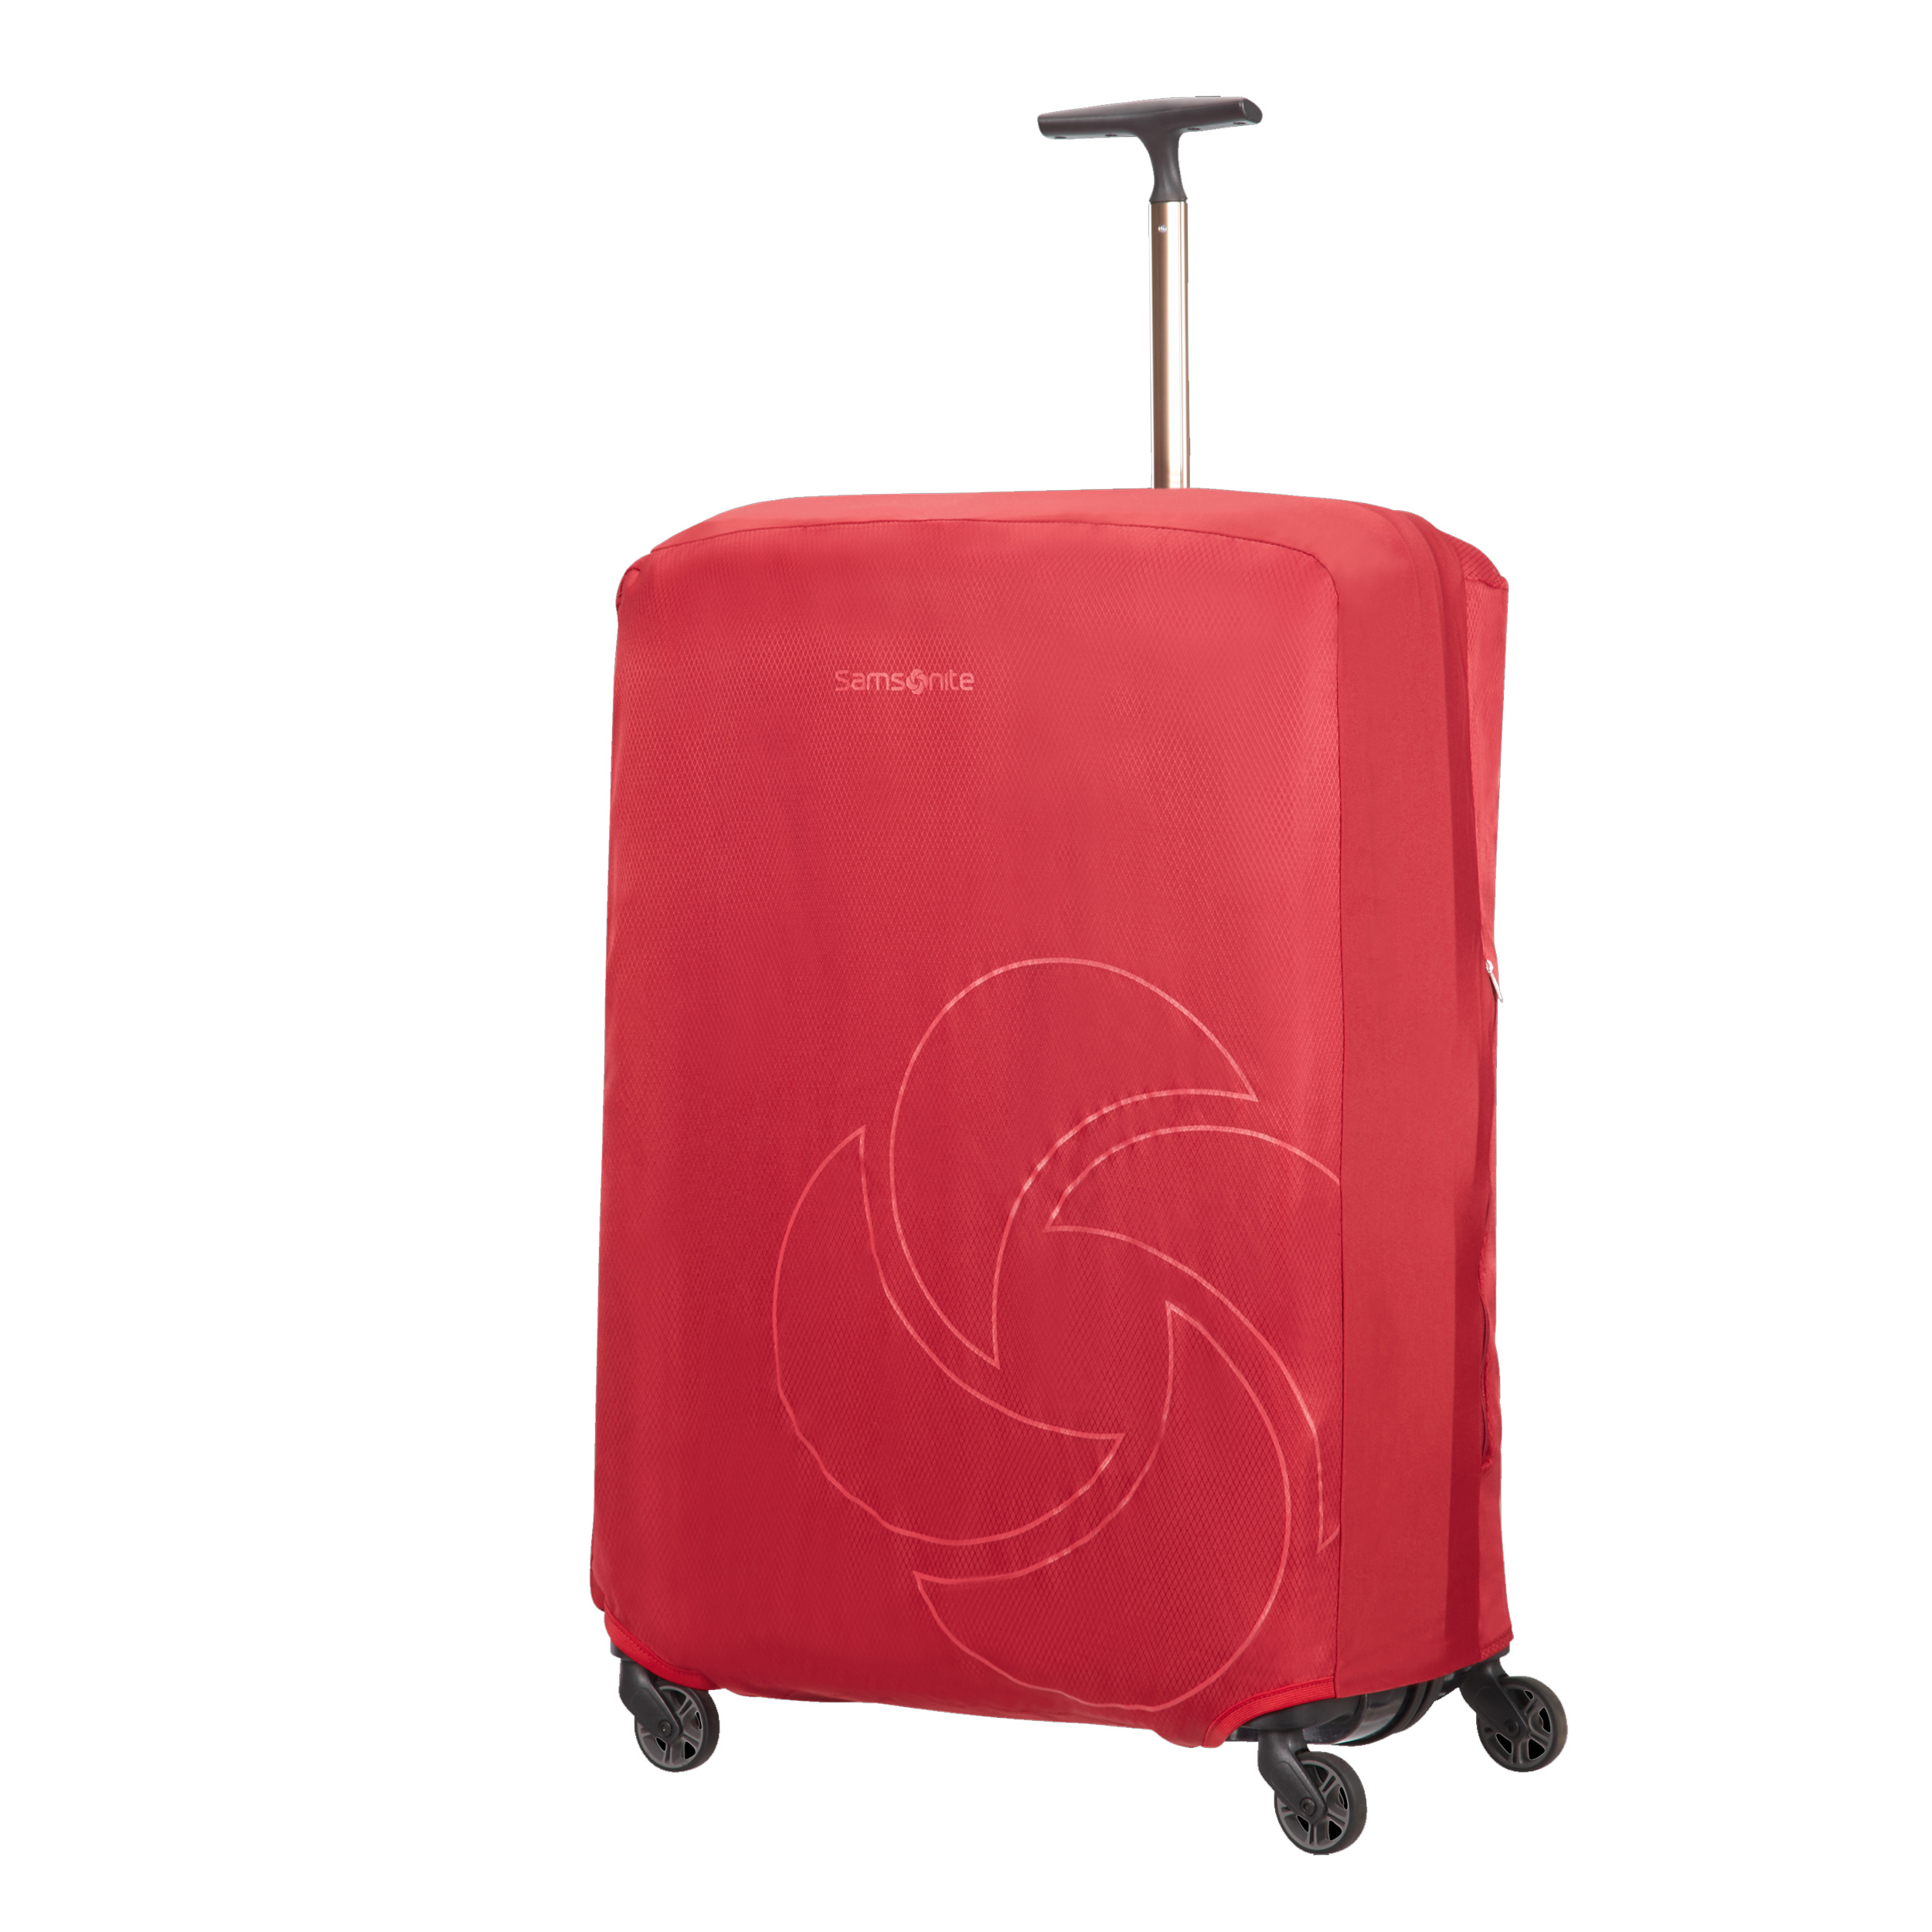 Housse de protection élastique pour valise jusqu'à 53 cm de